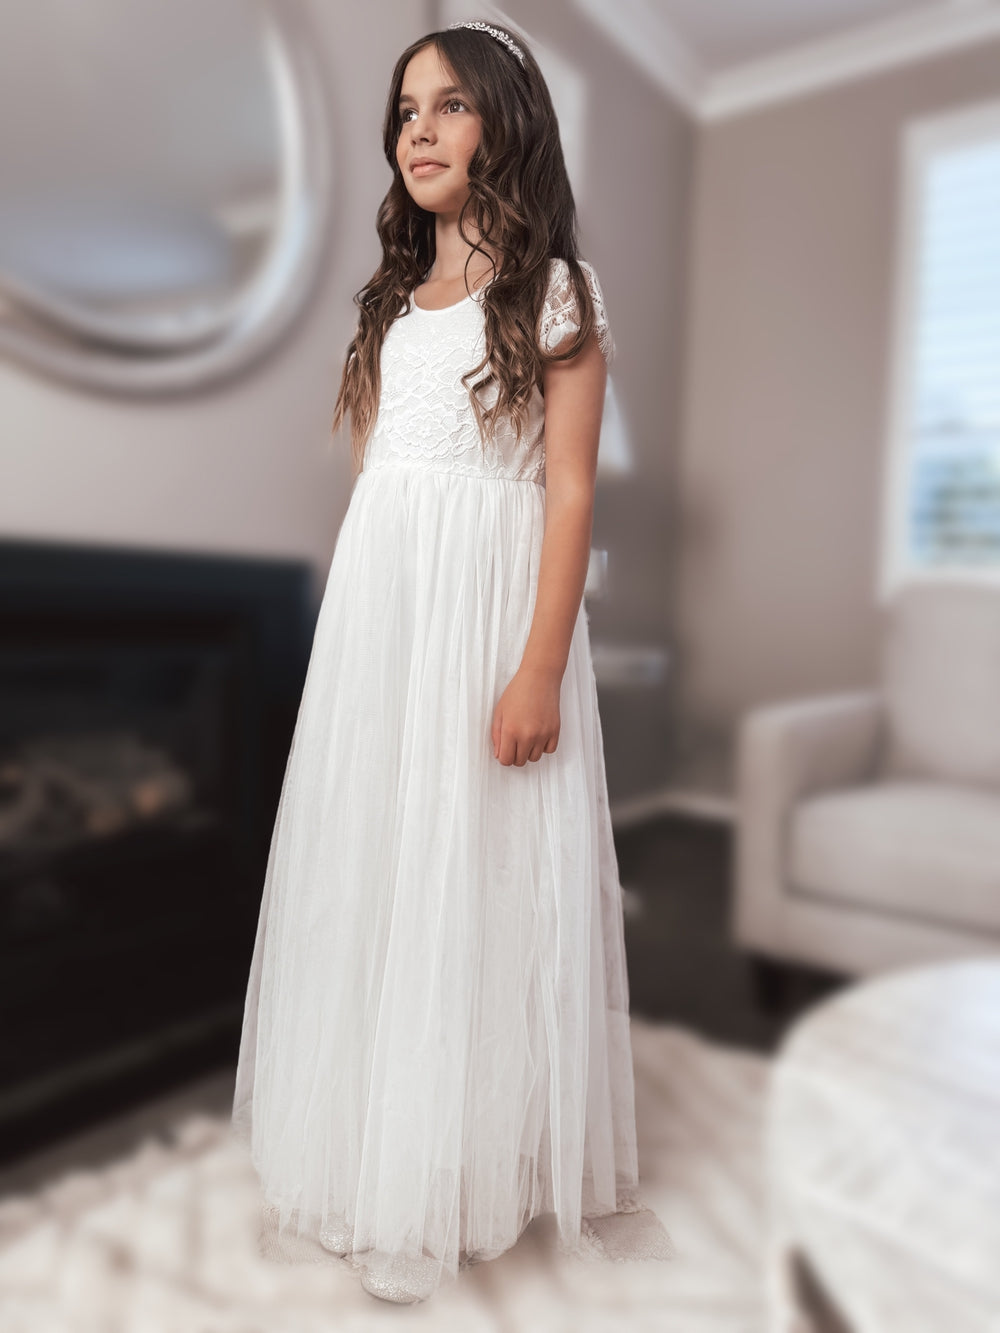 Celeste Girls White Lace & Tulle Dress - BestsellersWhite first communion dress - full length dress